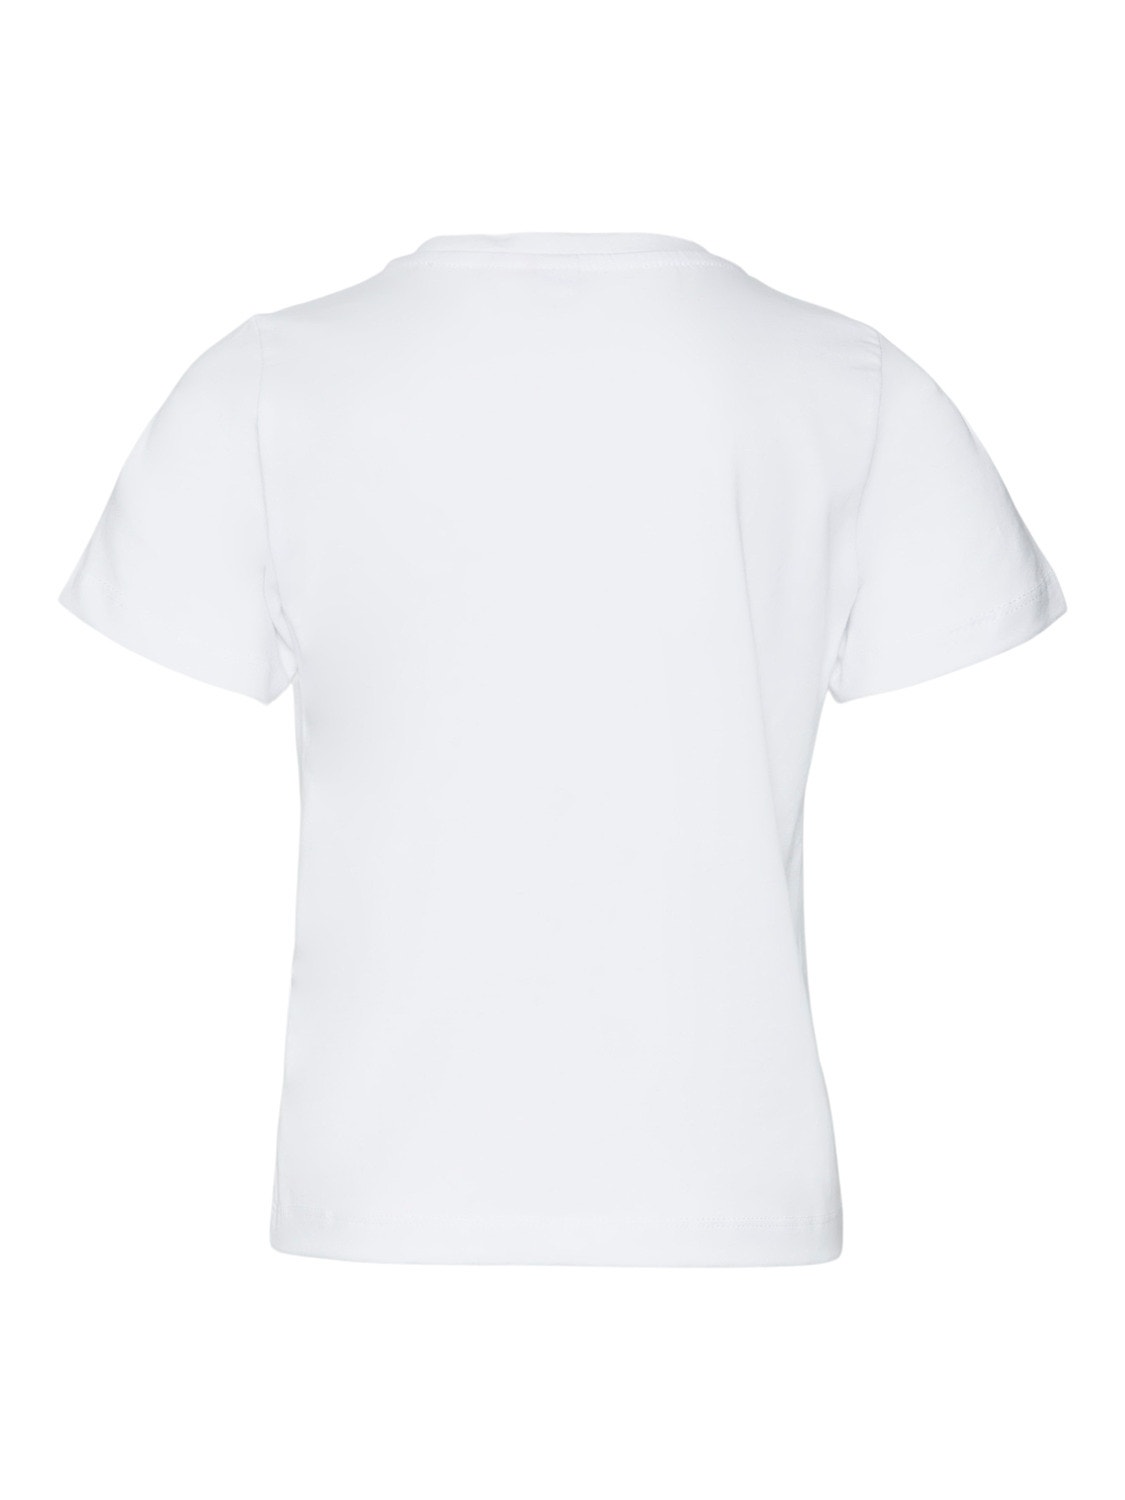 Vero Moda VMMIRANDAFRANCIS T-shirts -Bright White - 10282260